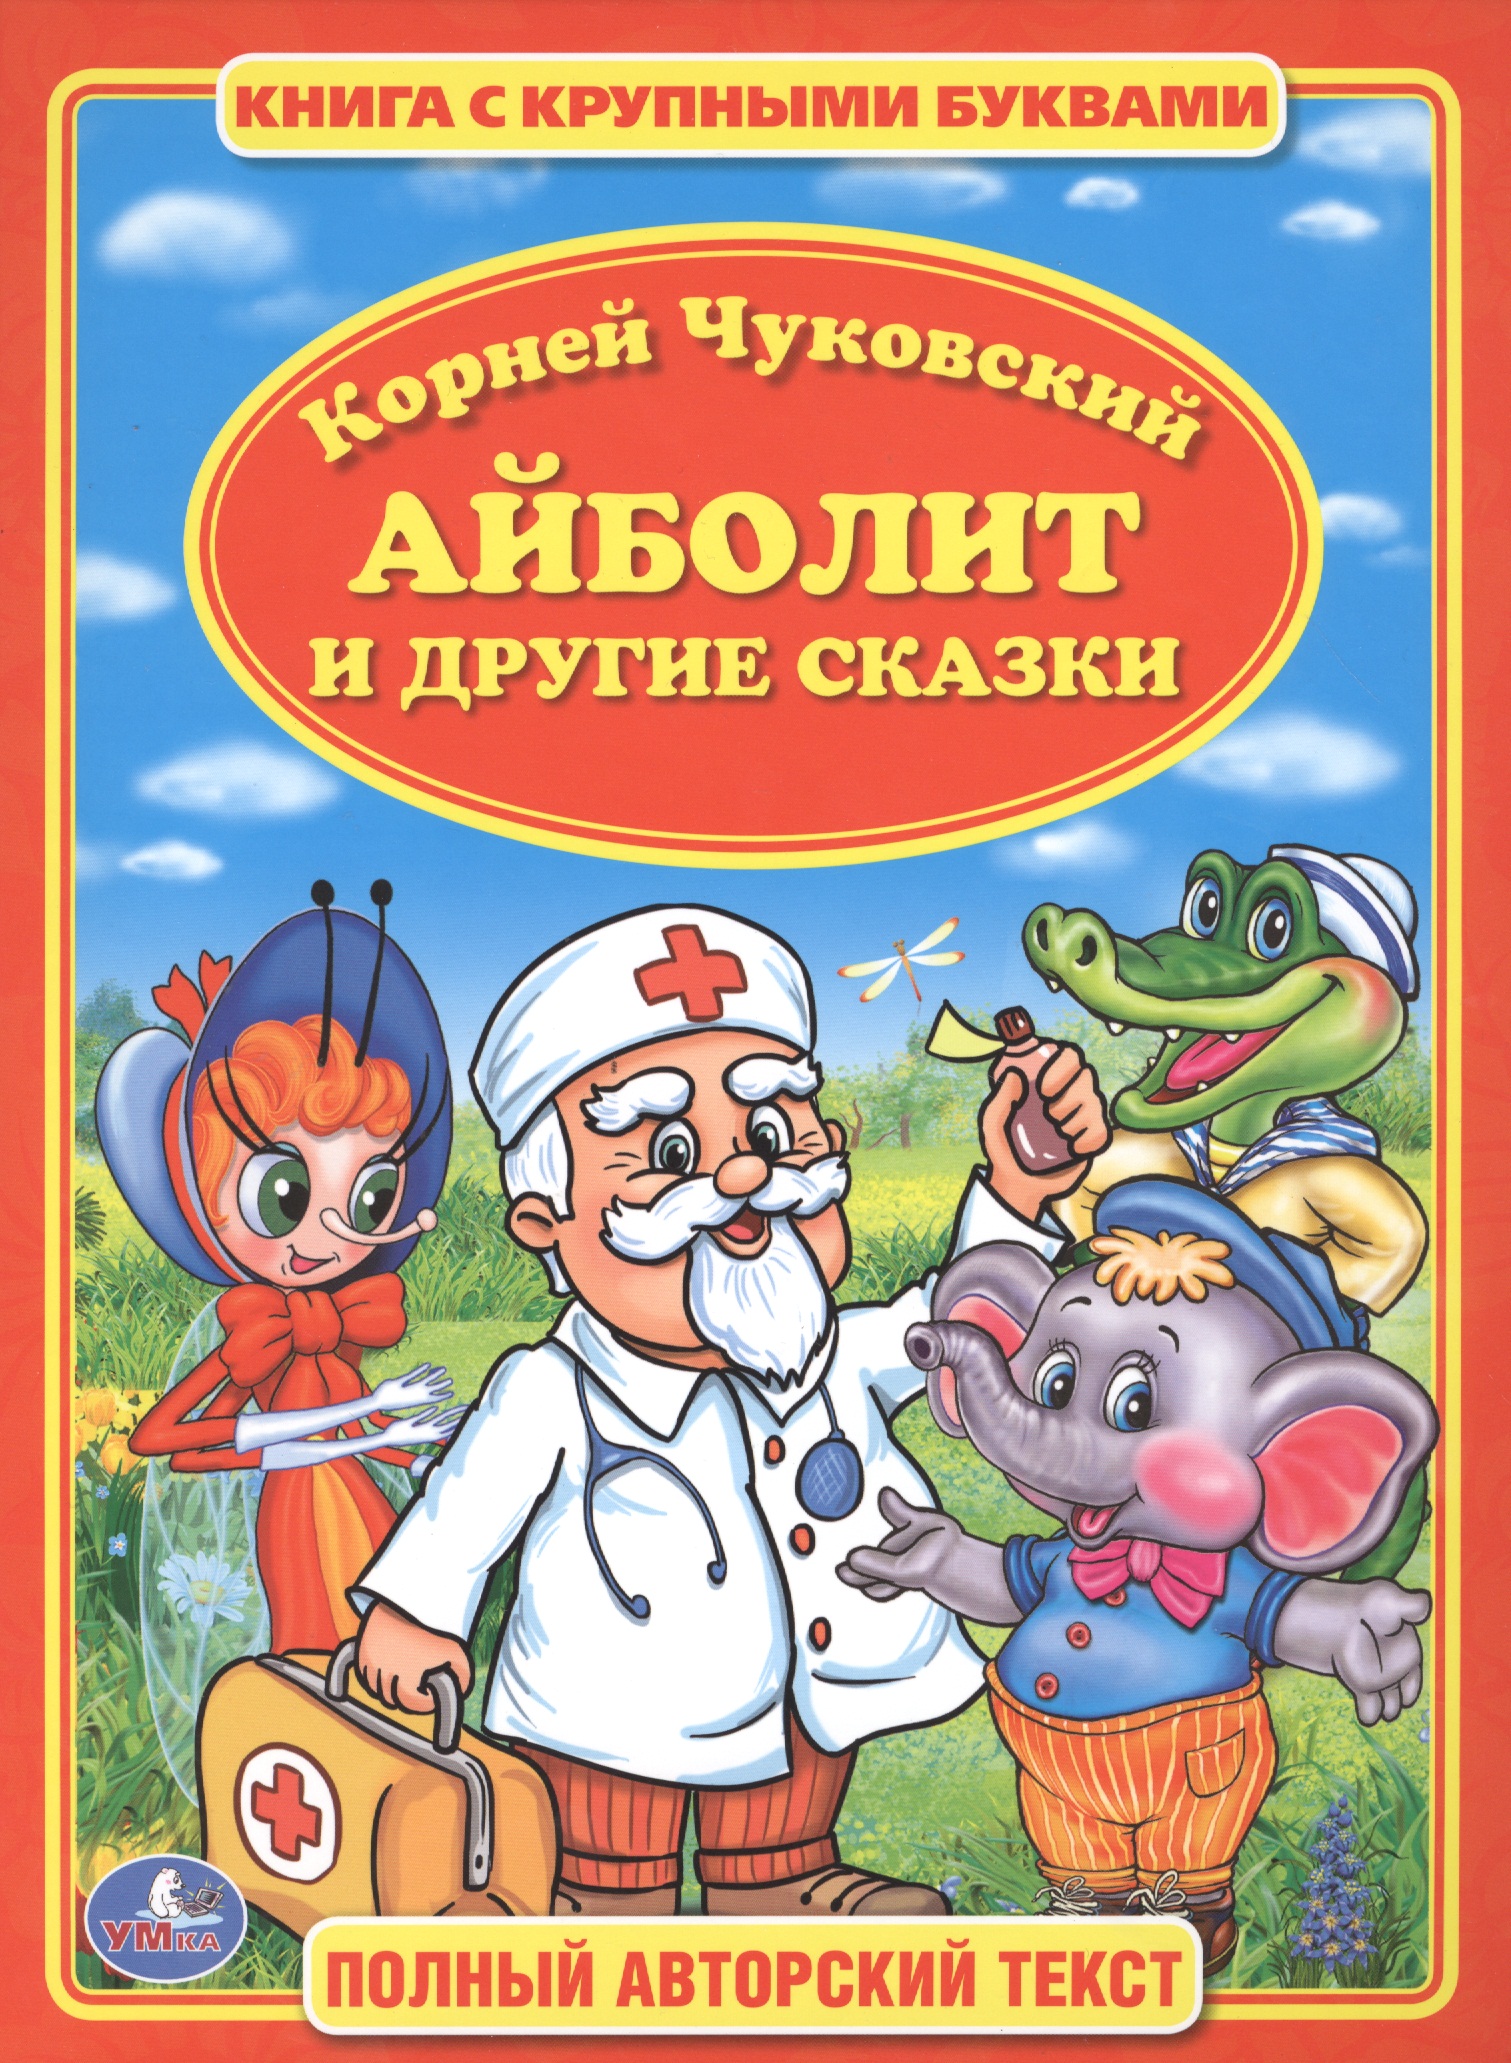 Айболит кто автор. Обложка книги к.Чуковского Айболит для детей.